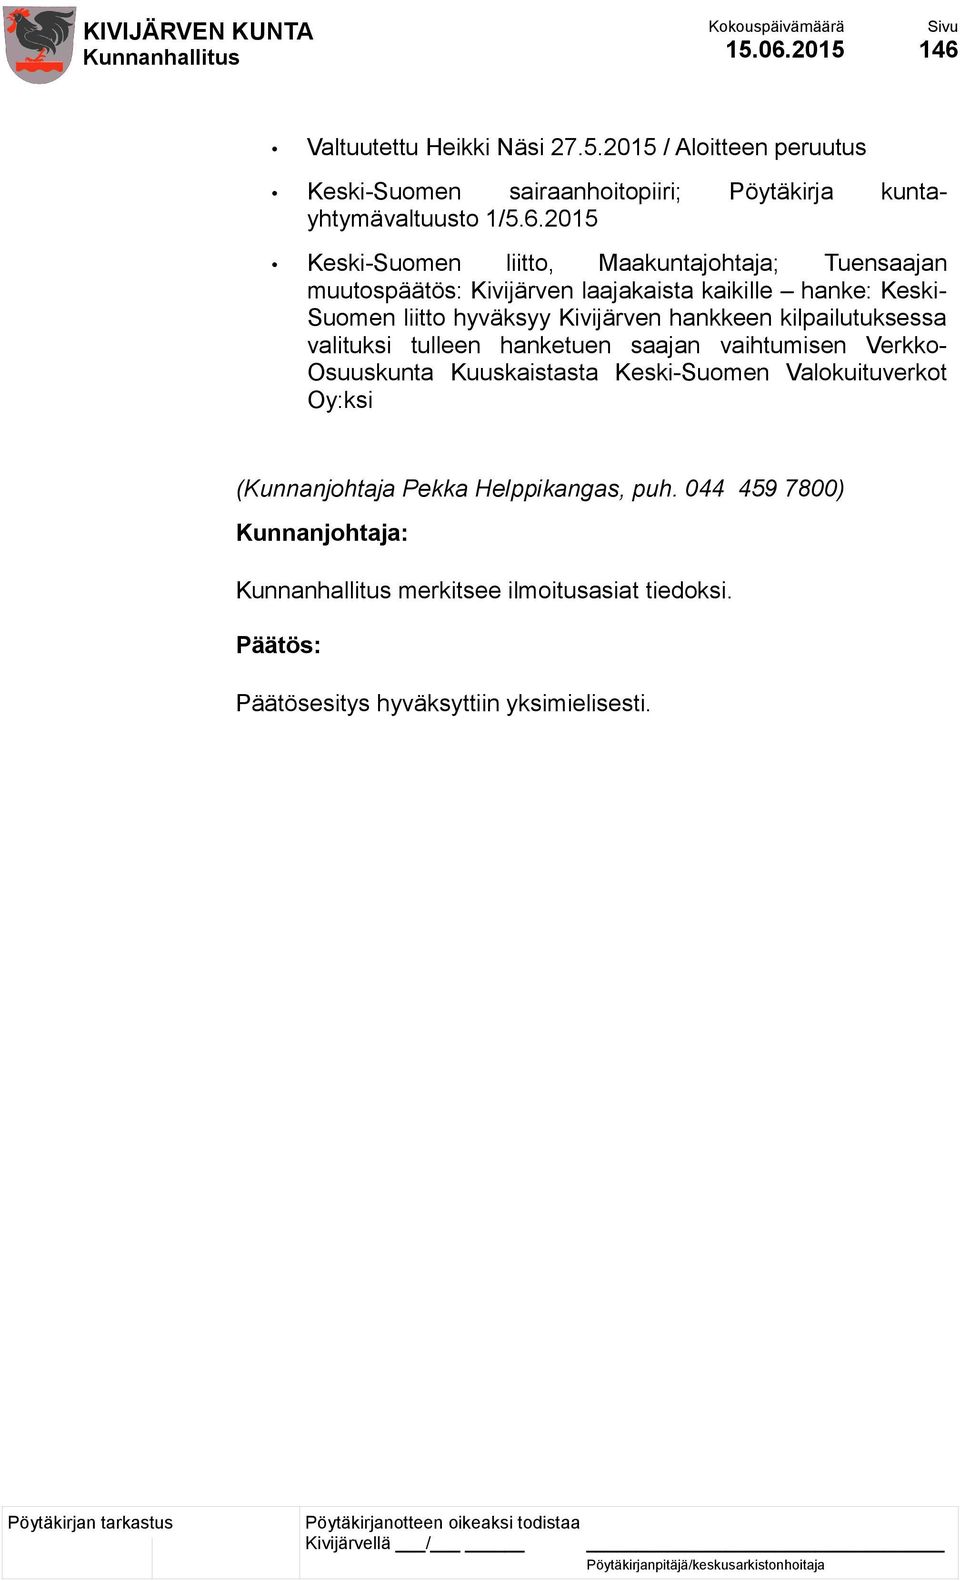 Valtuutettu Heikki Näsi 27.5.2015 / Aloitteen peruutus Keski-Suomen sairaanhoitopiiri; Pöytäkirja kuntayhtymävaltuusto 1/5.6.